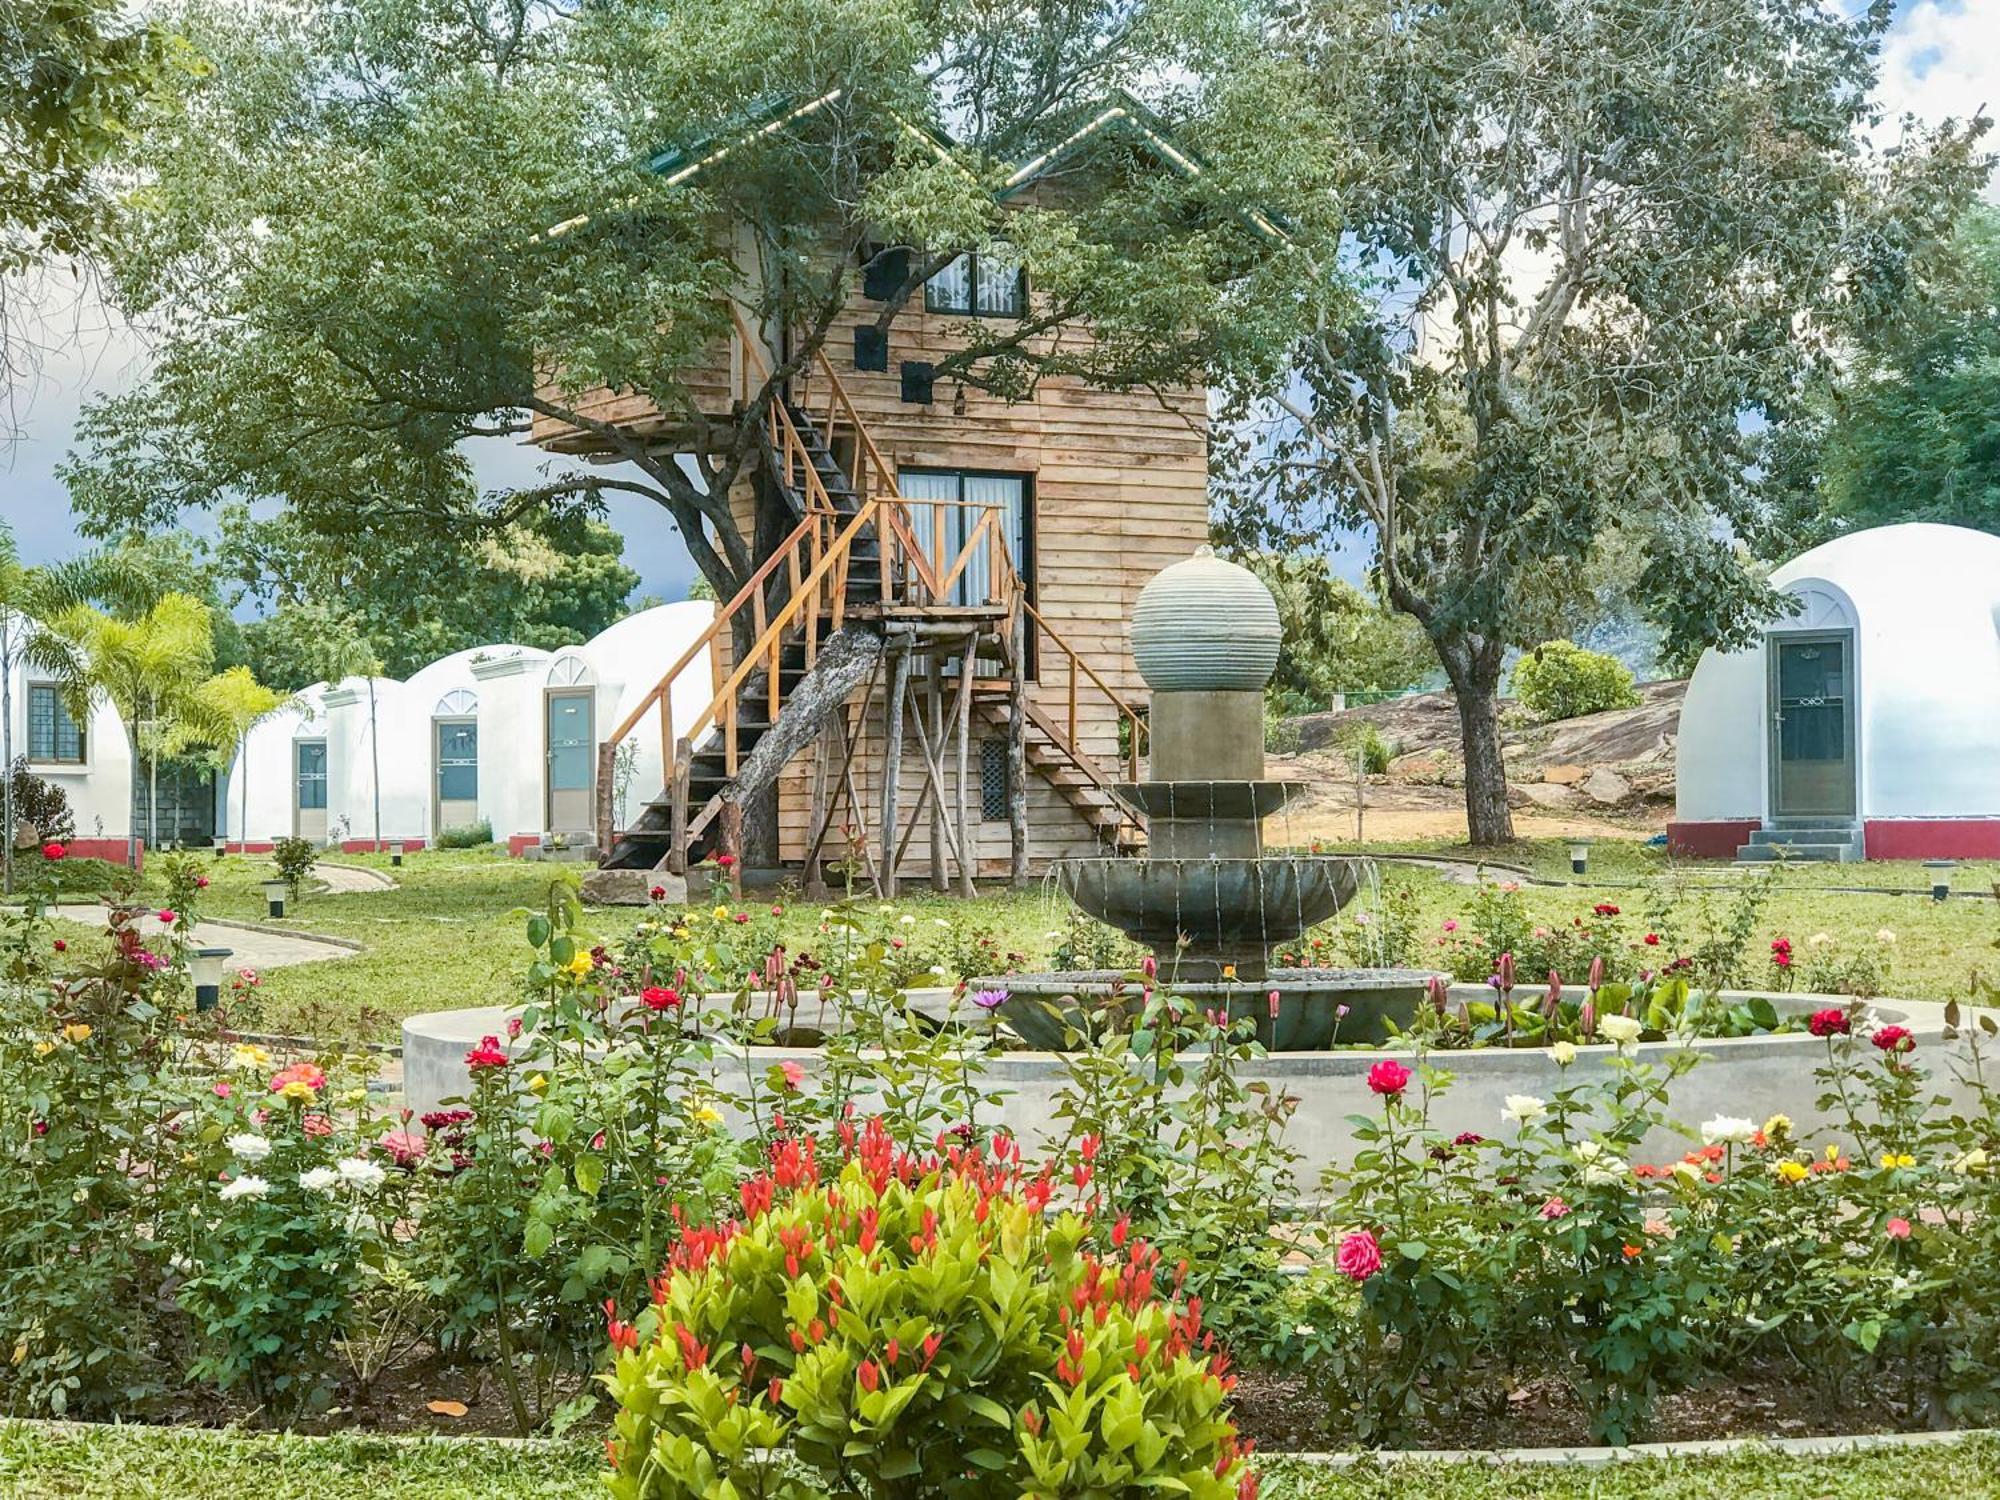 The Lion Kingdom Sigiriya Hotel Bagian luar foto